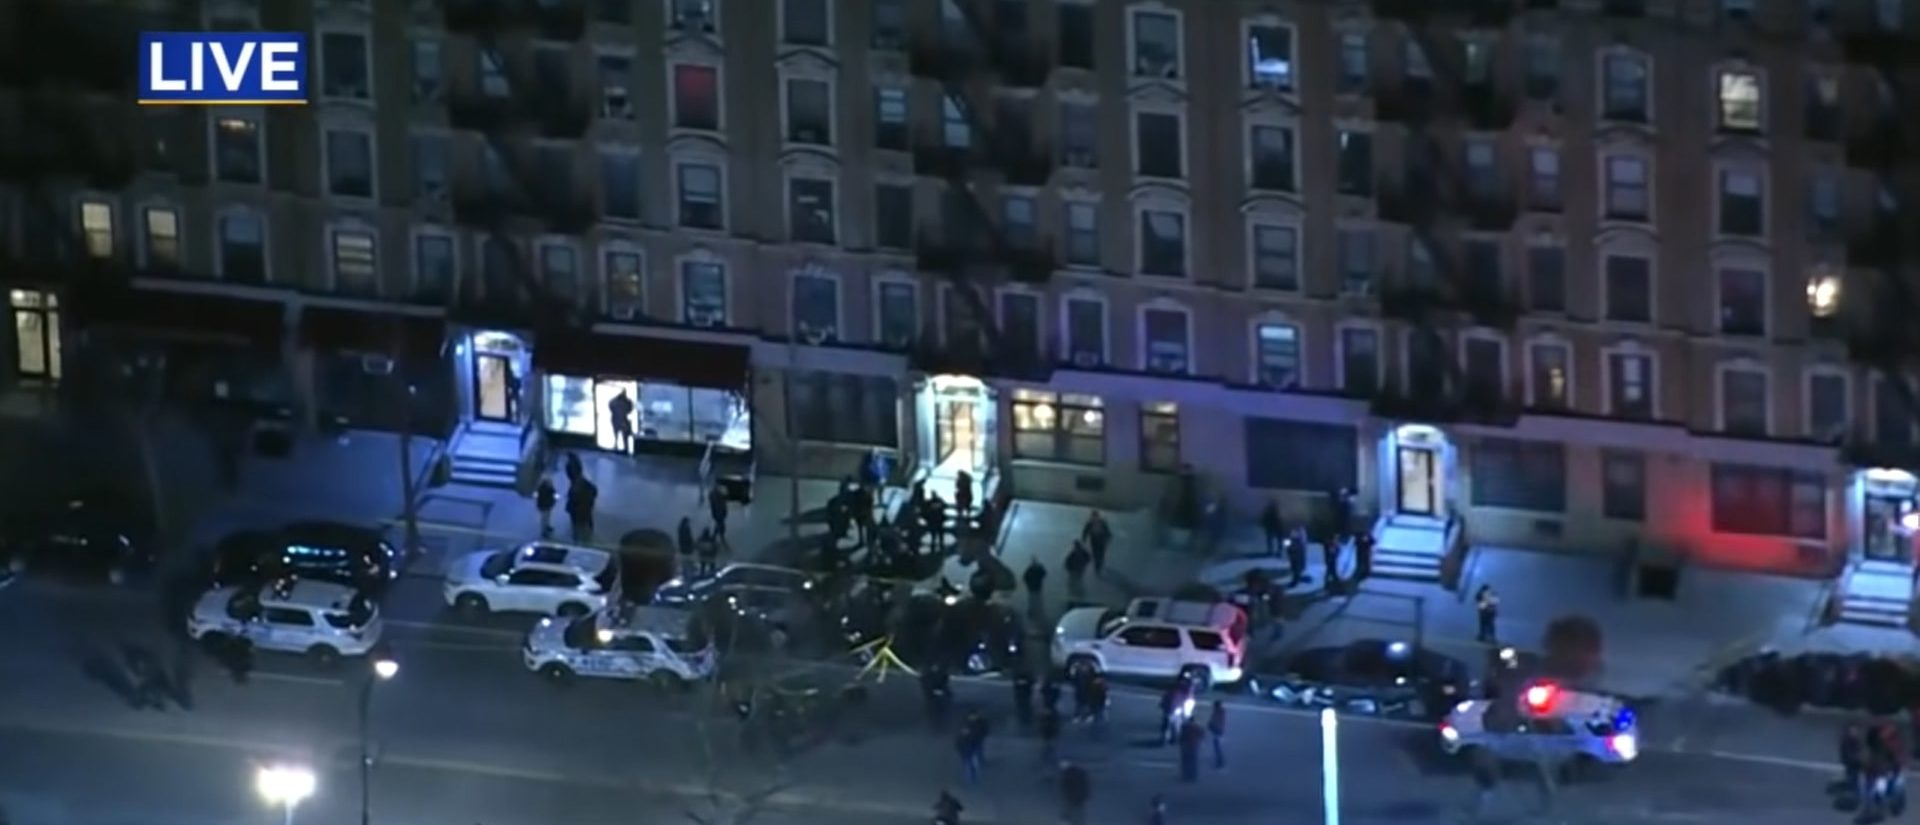 Dos oficiales de la policía de Nueva York baleados, sospechoso muerto después del tiroteo en Harlem